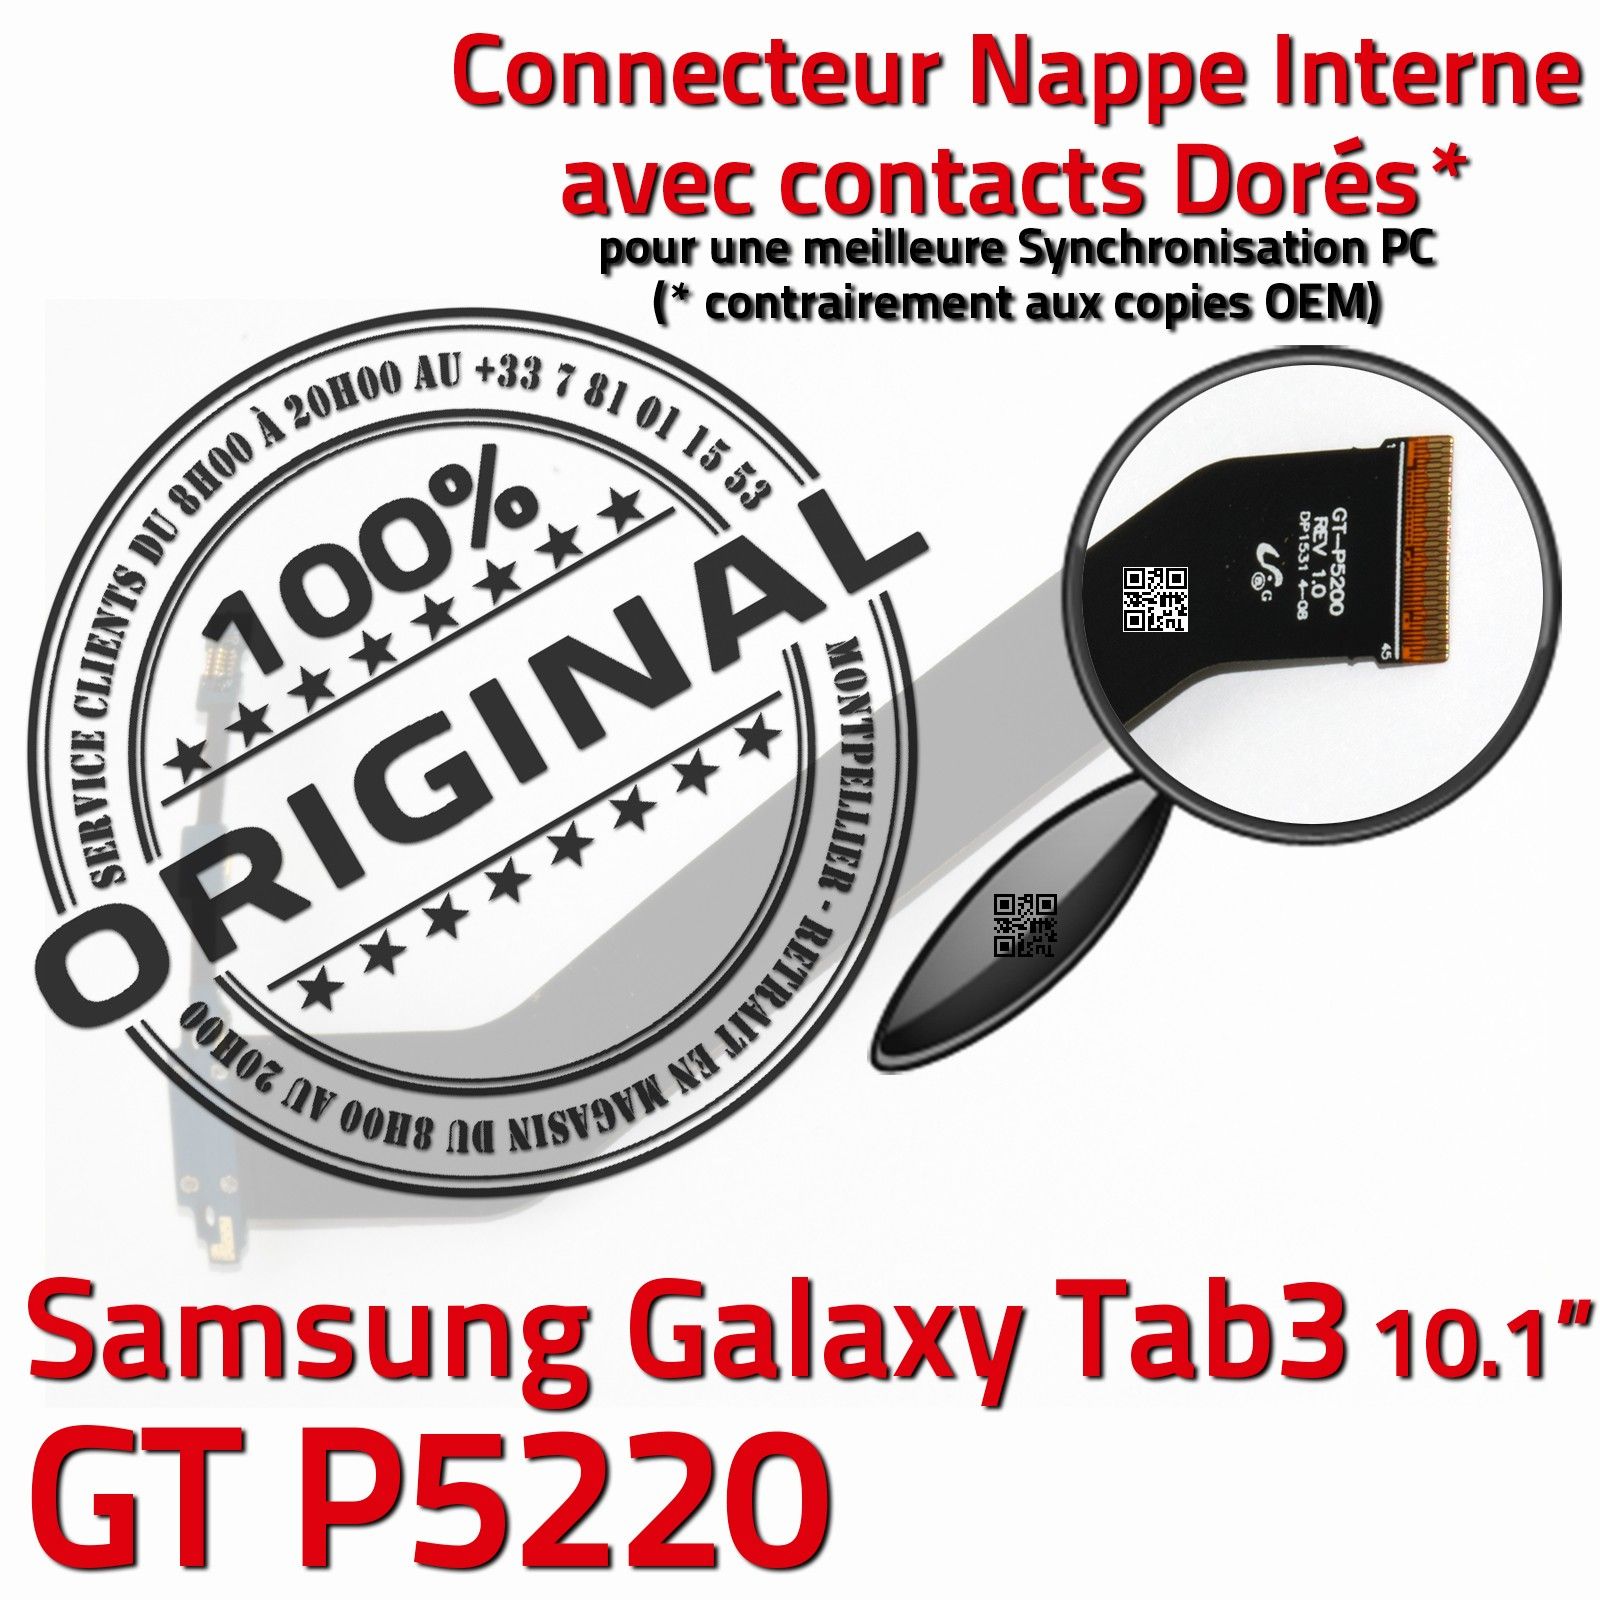 ORIGINAL Samsung Galaxy TAB3 GT-P5220 Connecteur de Charge Chargeur MicroUSB Nappe OFFICIELLE Qualité Contacts Dorés Réparation